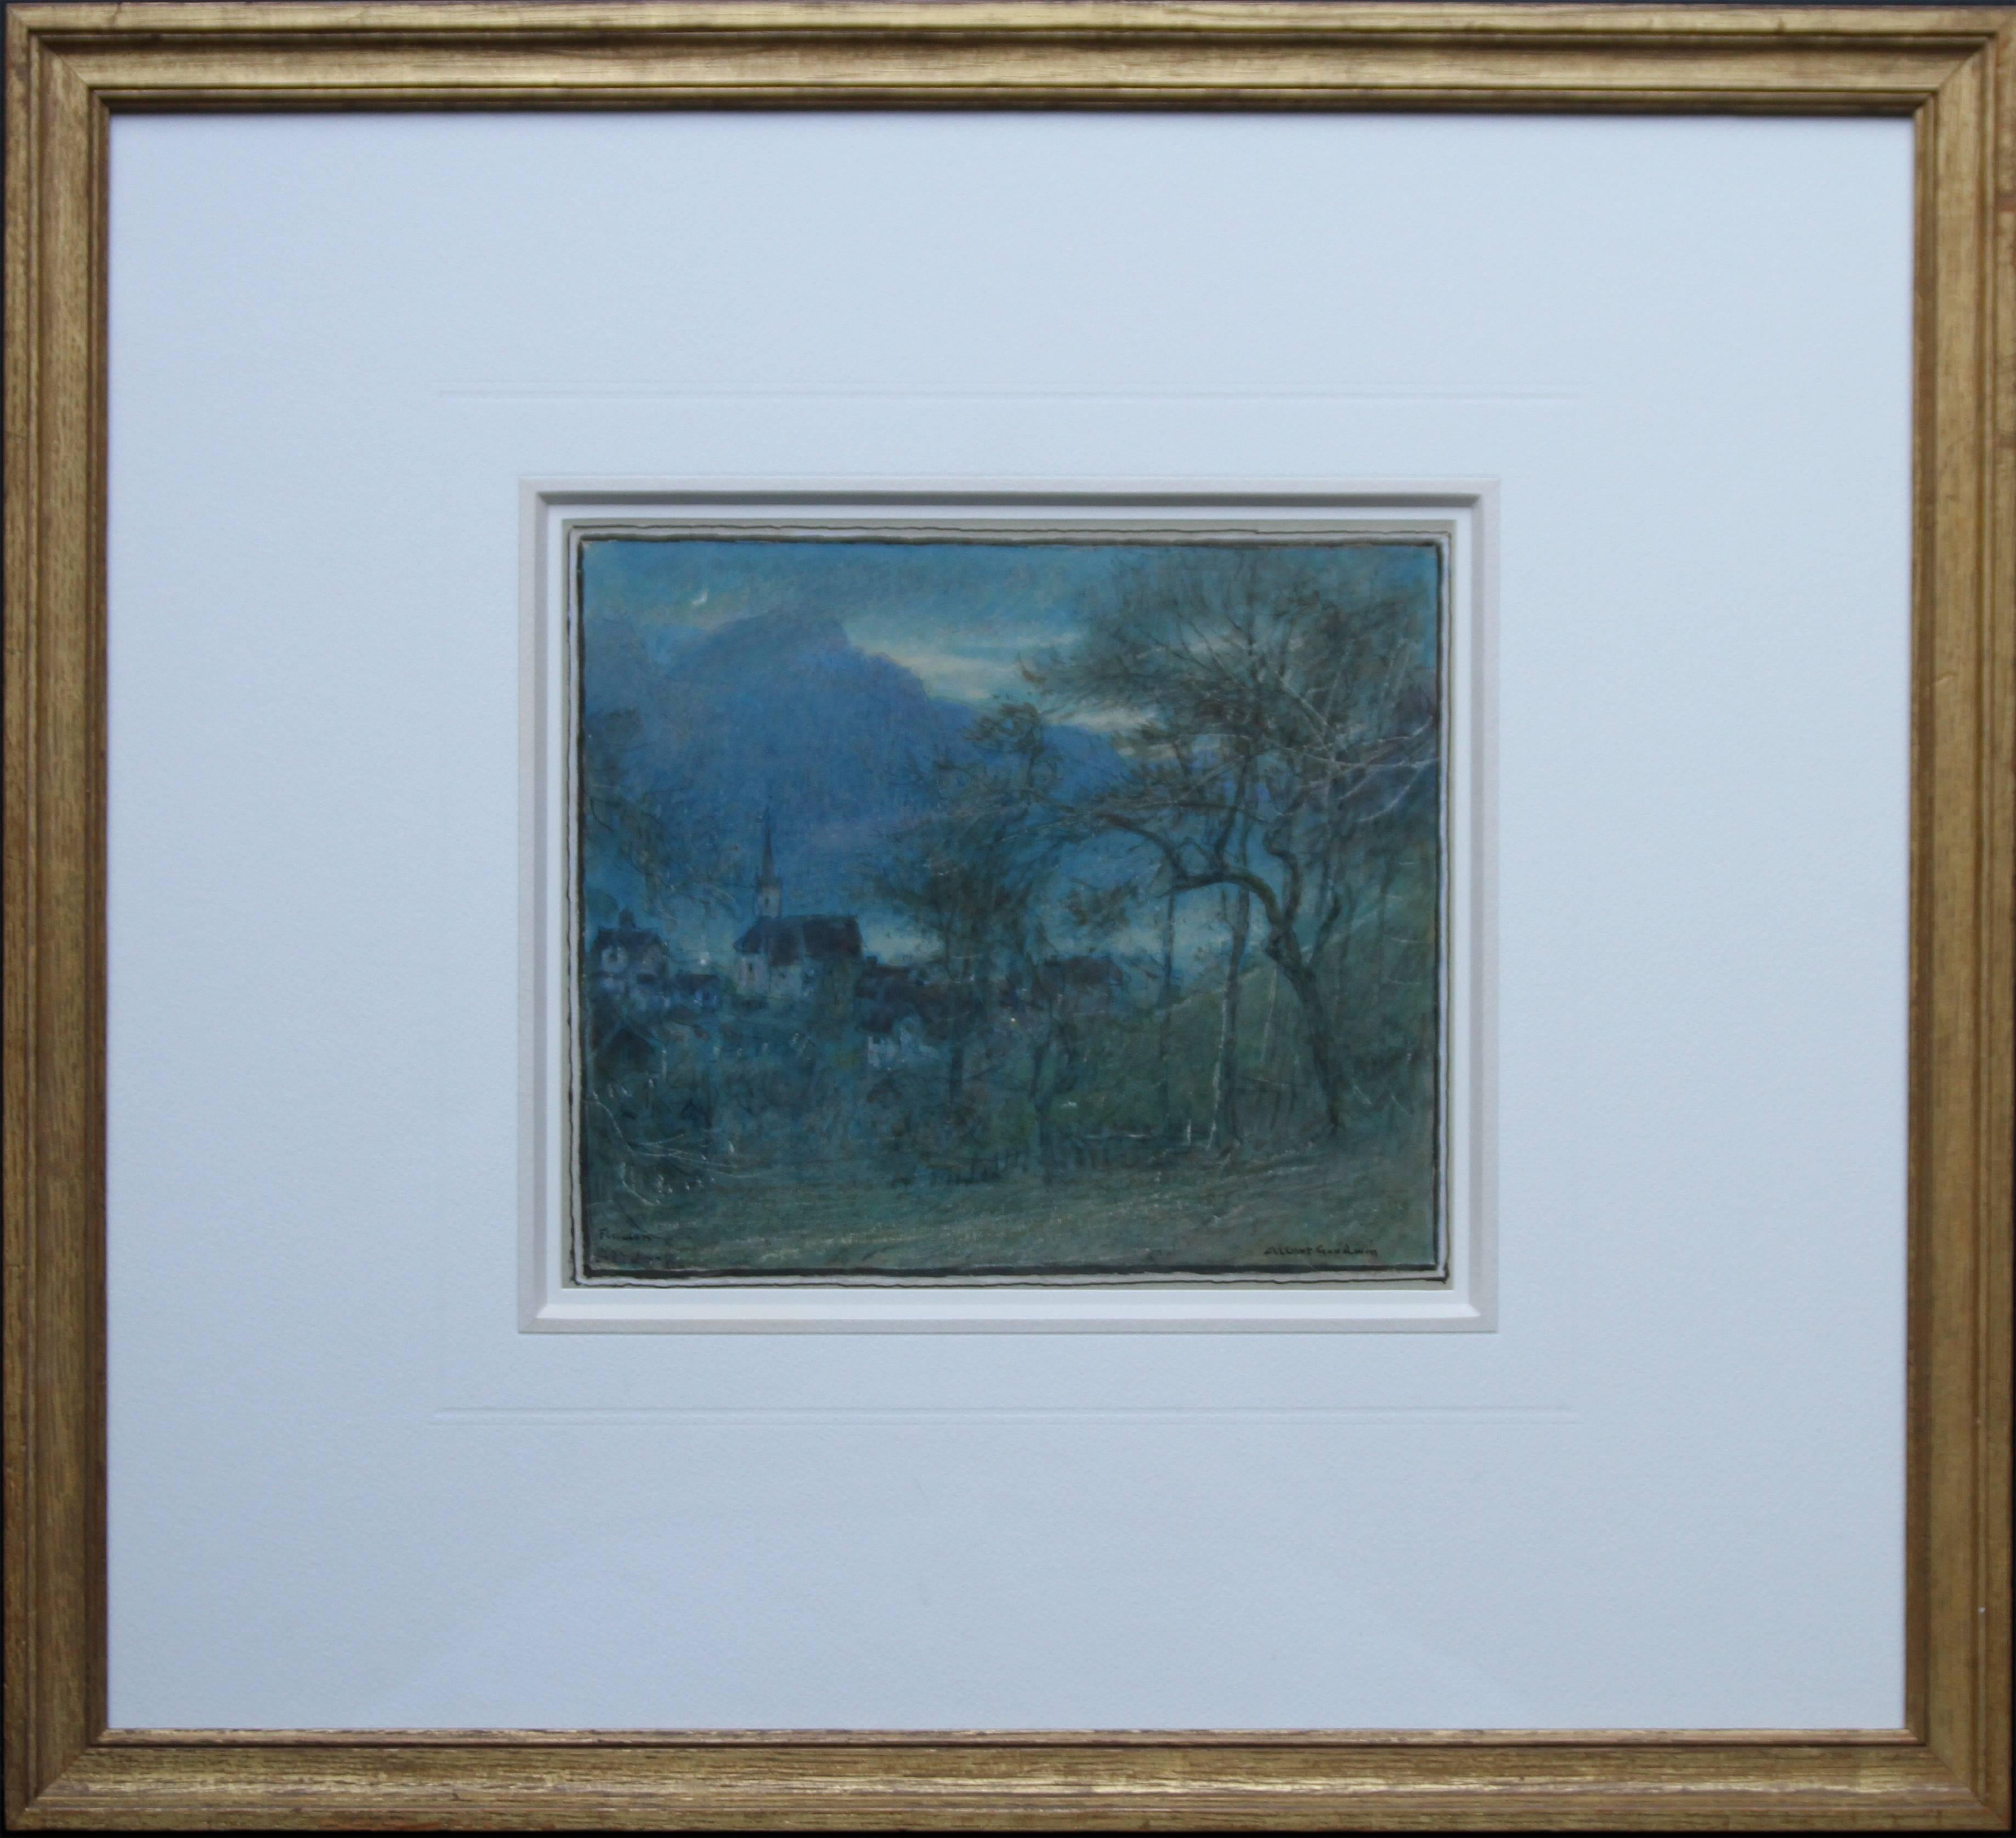 Landscape Art Albert Goodwin - Paysage suisse de nocturne - Aquarelle de l'artiste britannique des années 20  paysage Suisse